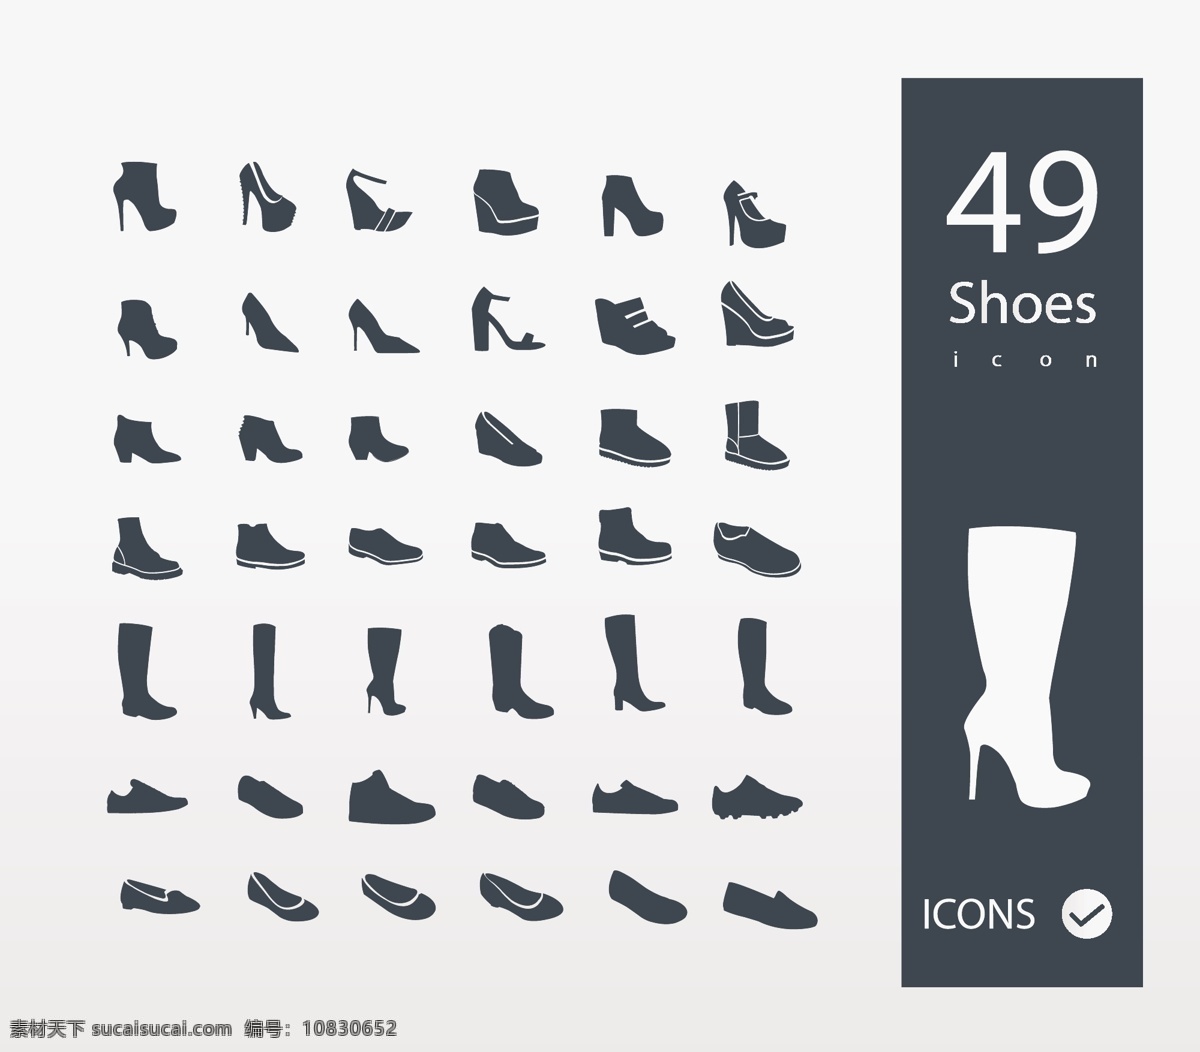 鞋子图标 小图标 网页图标 生活图标 信息图标 矢量图标 标志图标 矢量素材 白色